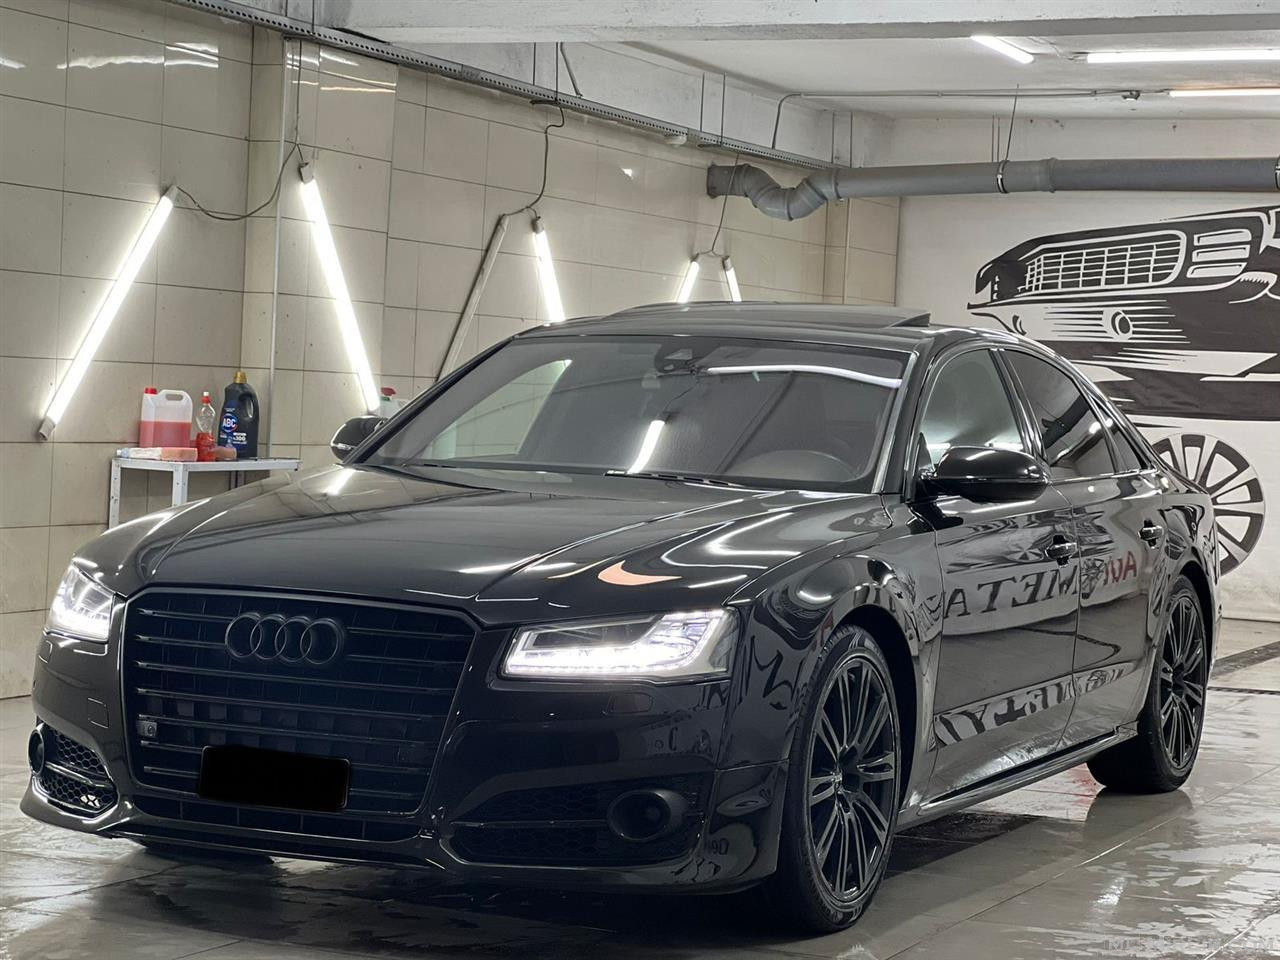  Audi A8  Viti Prodhimit 2010 4.2 Diesel  219.000 km